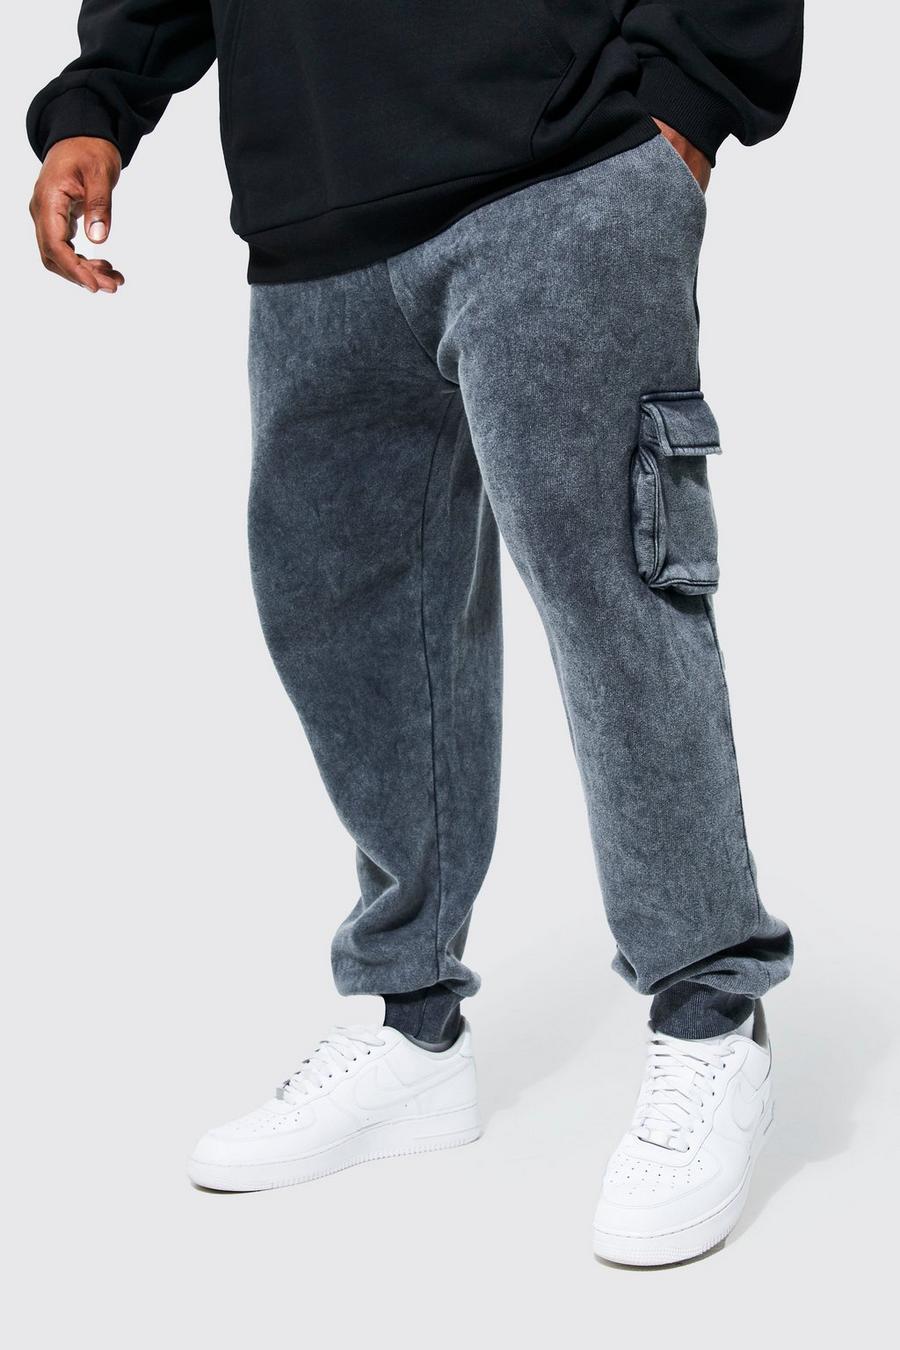 Pantalón deportivo Plus holgado cargo con lavado de ácido, Charcoal gris image number 1